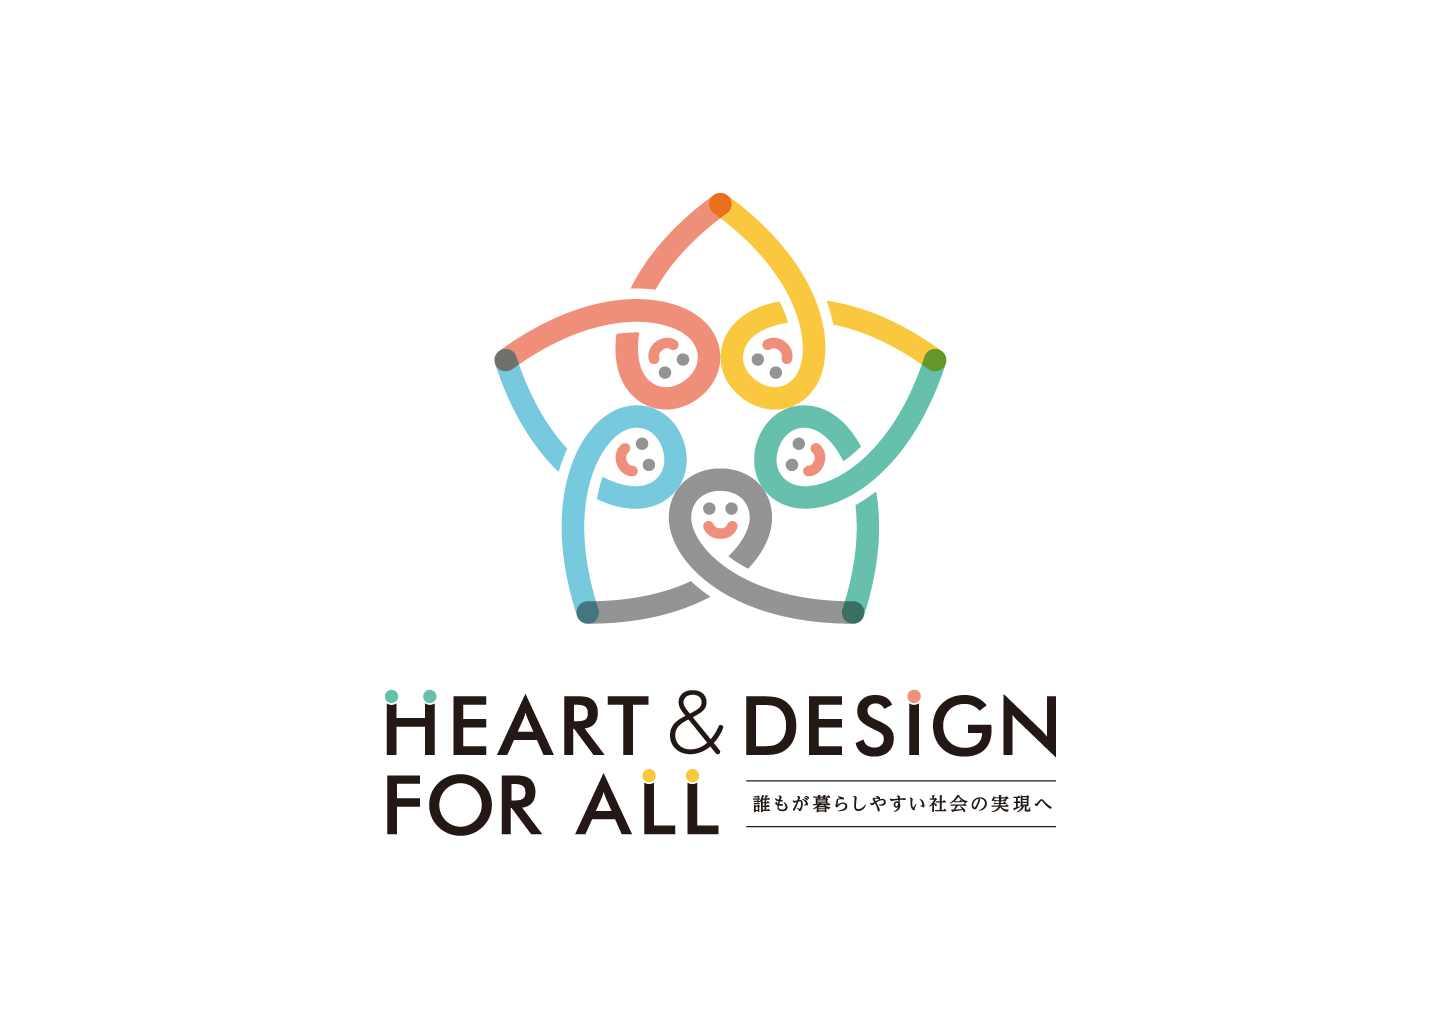 中日新聞社 Heart Design For All キャンペーンロゴ 株式会社モスデザイン研究所